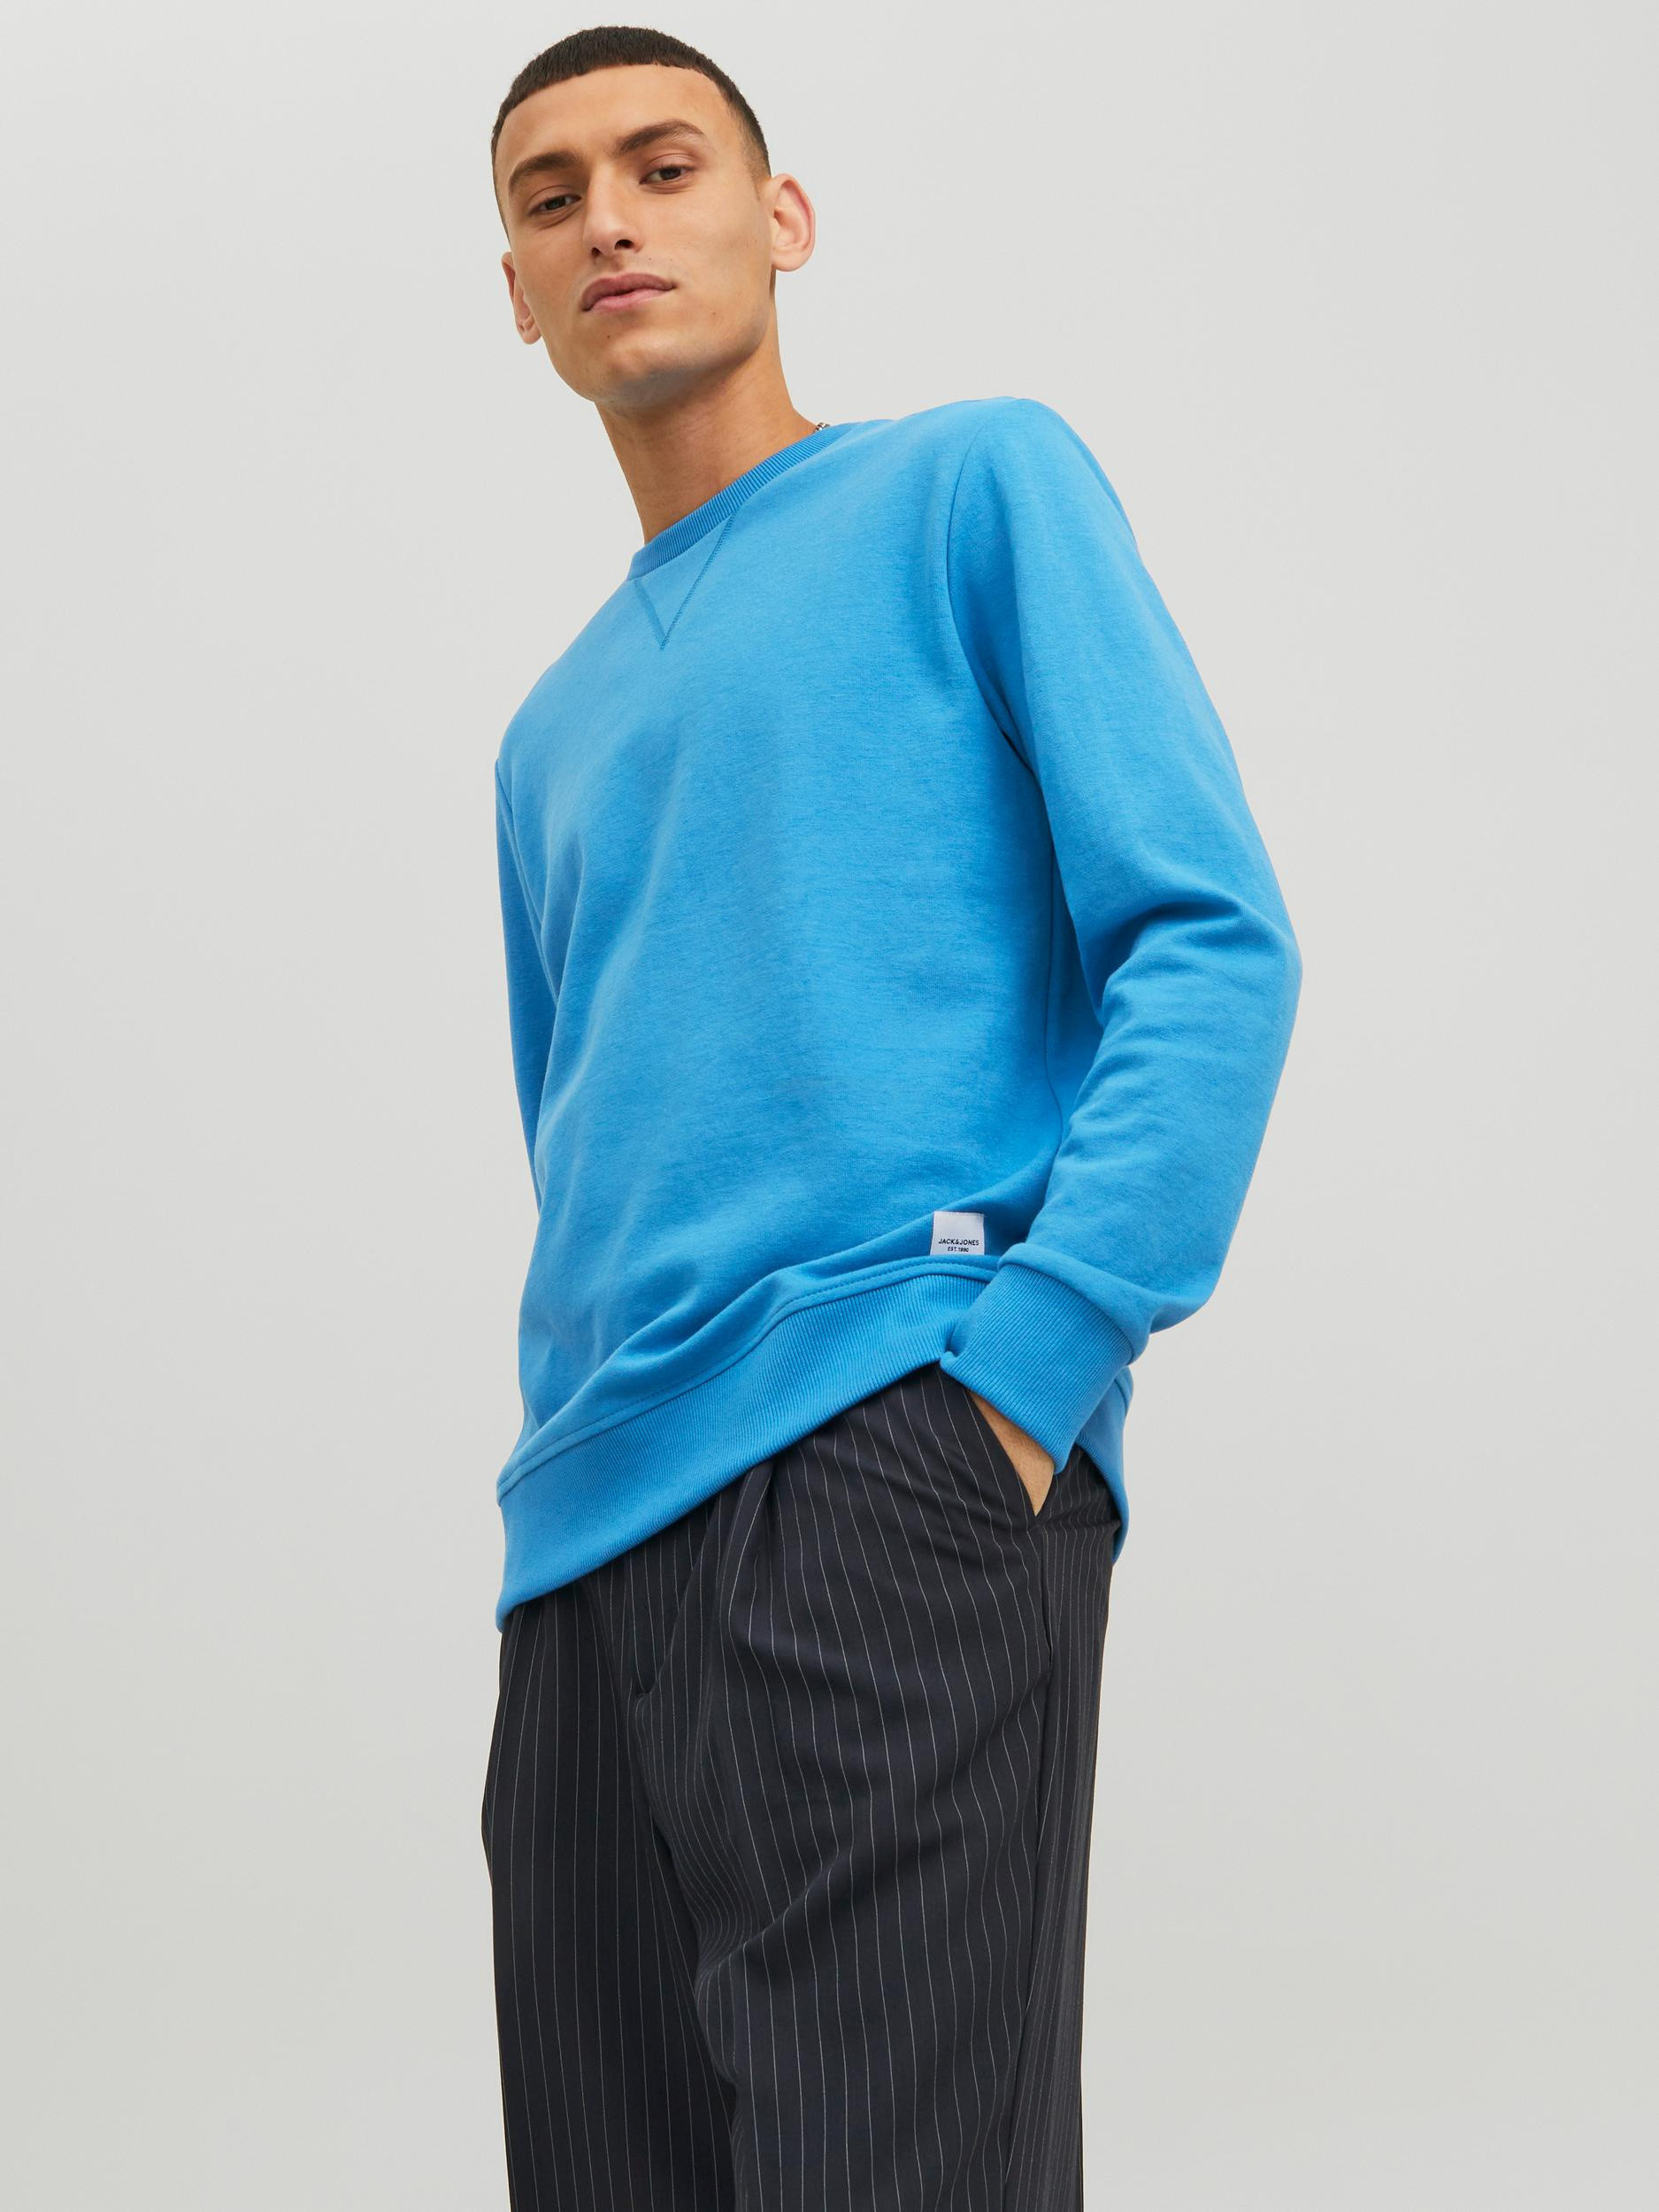 Jack & Jones - Pullover regular fit, Azzurro, large image number 3